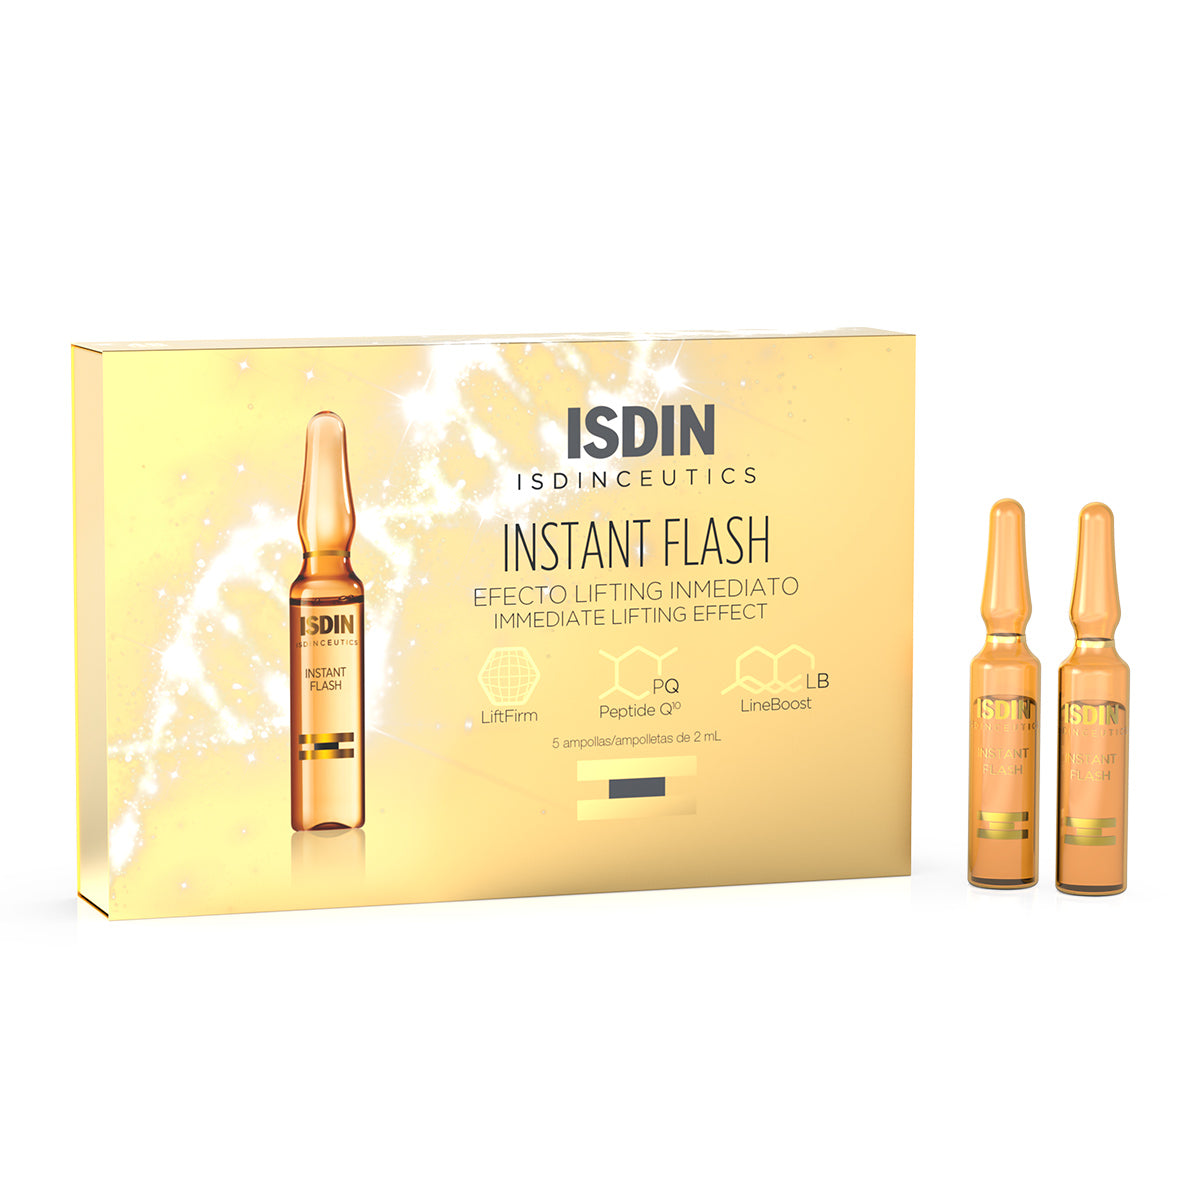 Isdin Isdinceutics Instant Flash, efecto lifting inmediato c/5